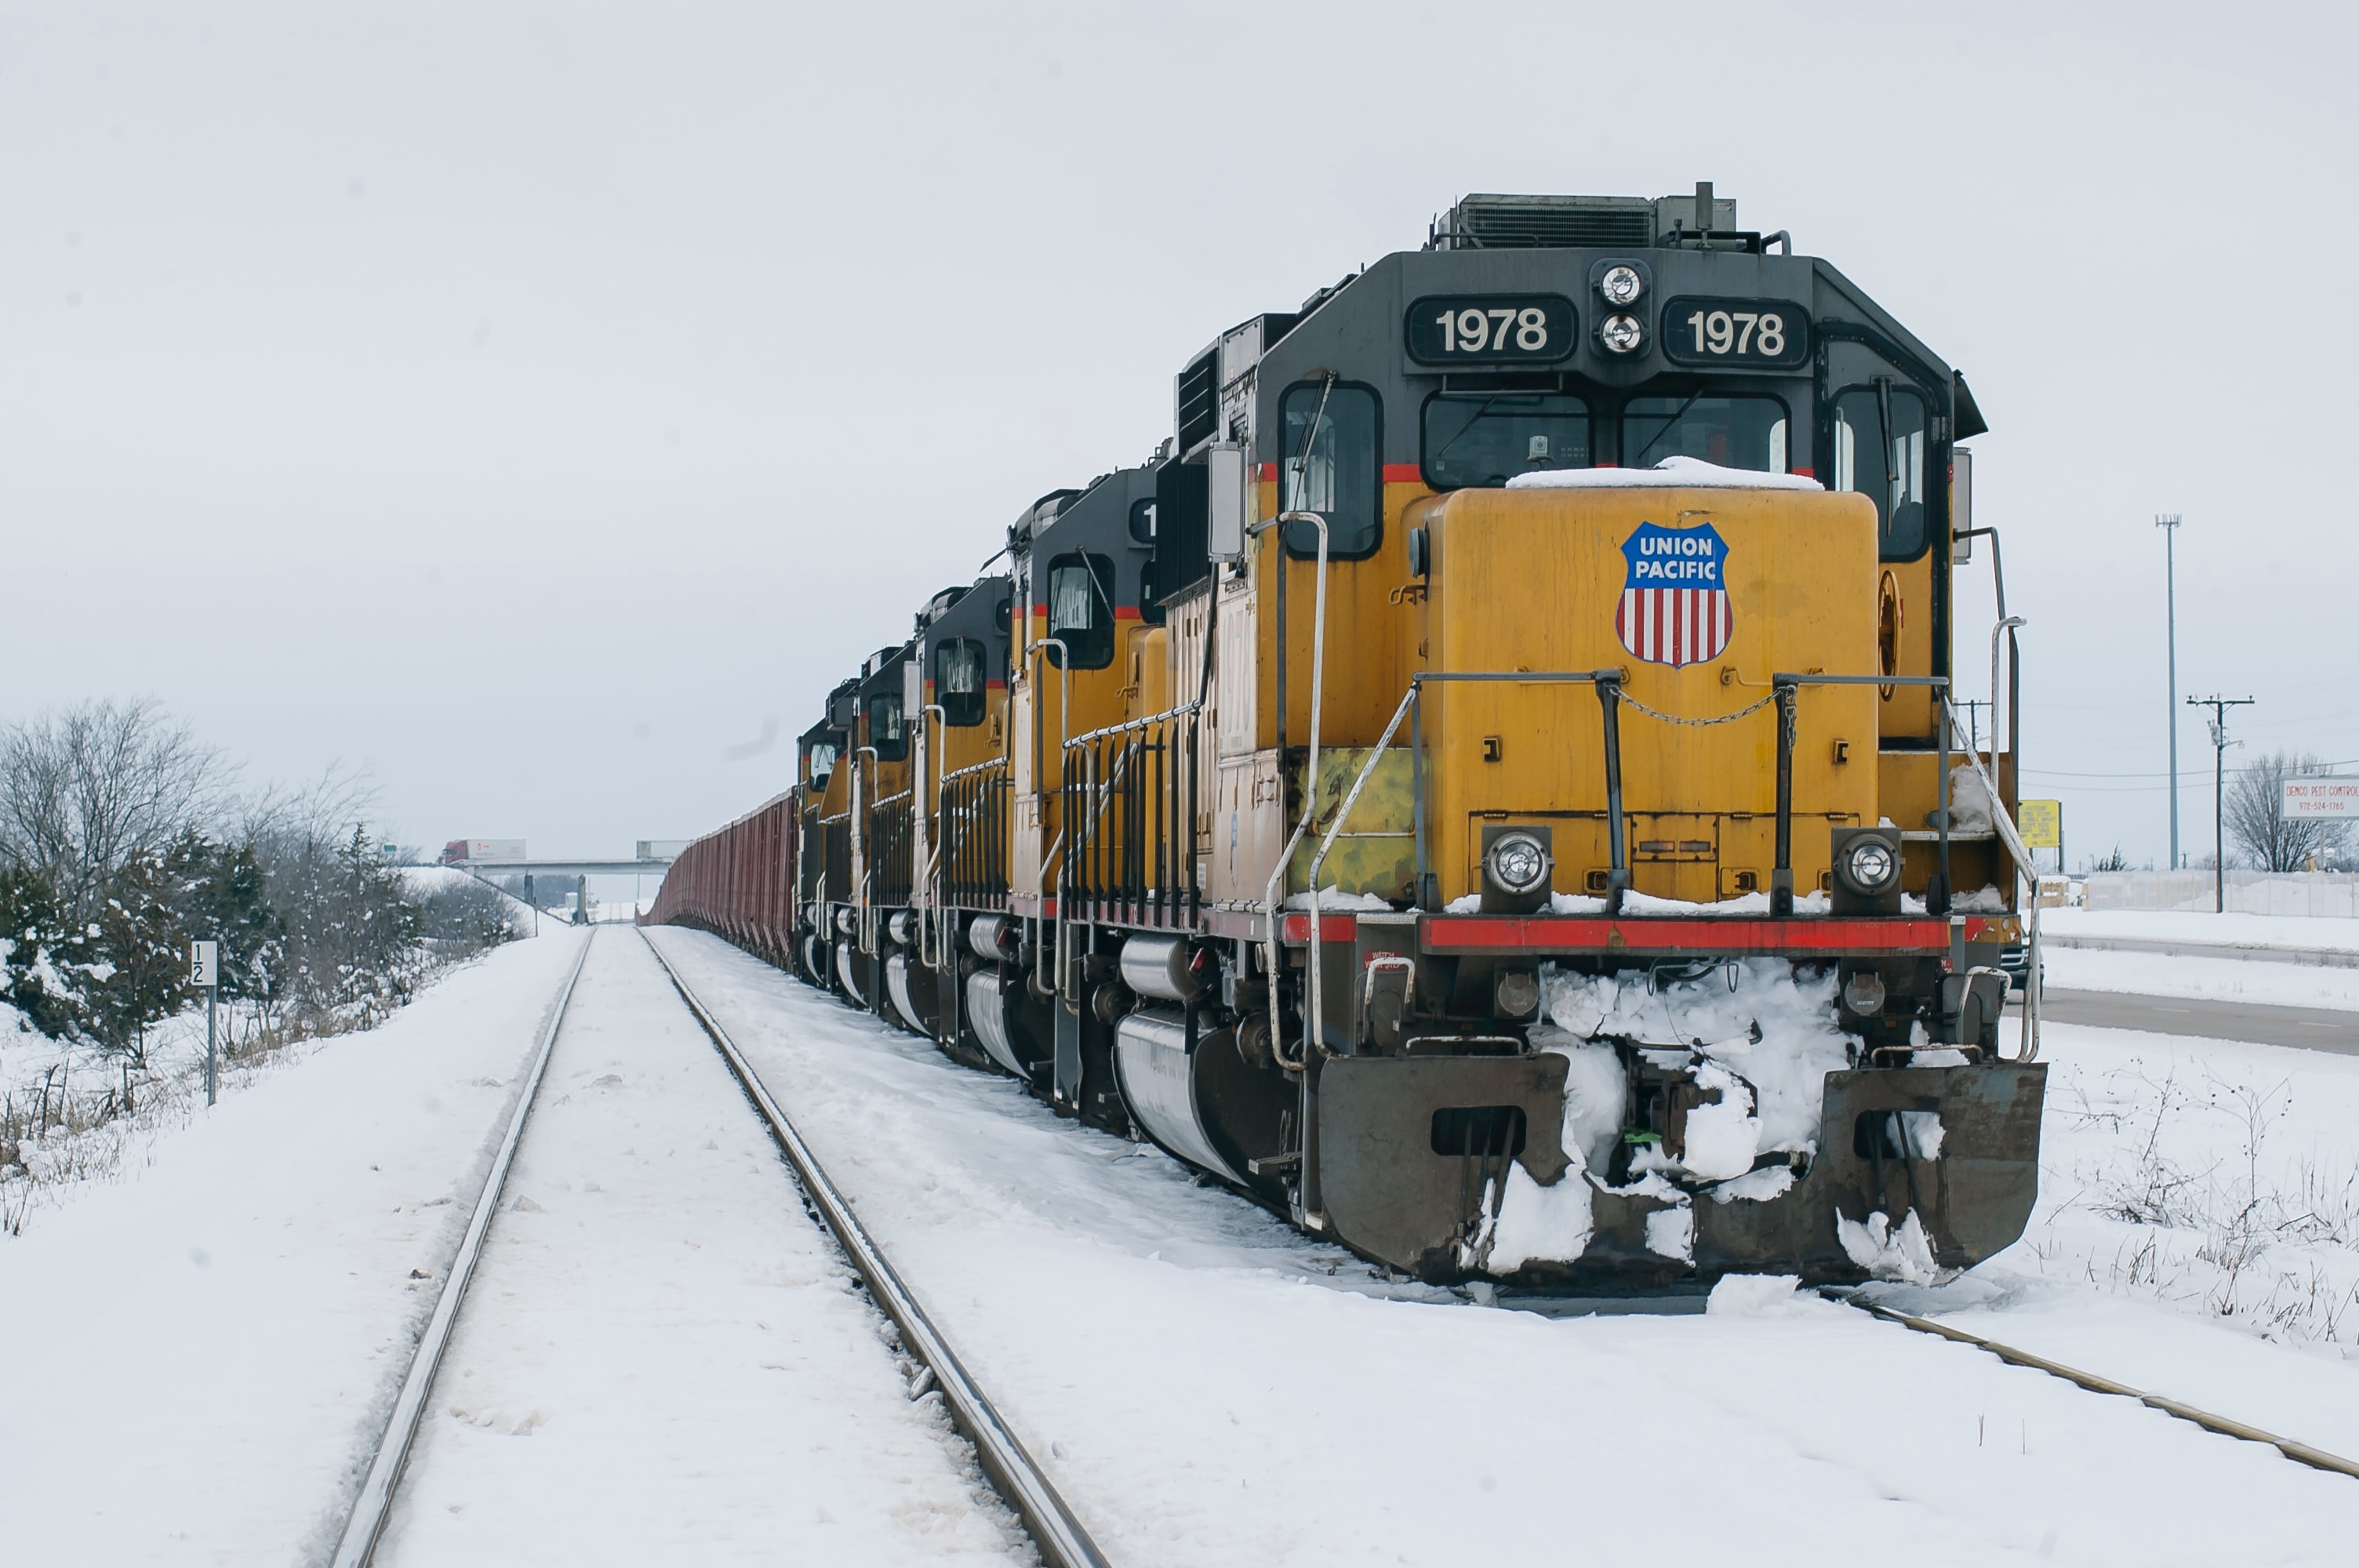 Train on a snowy day